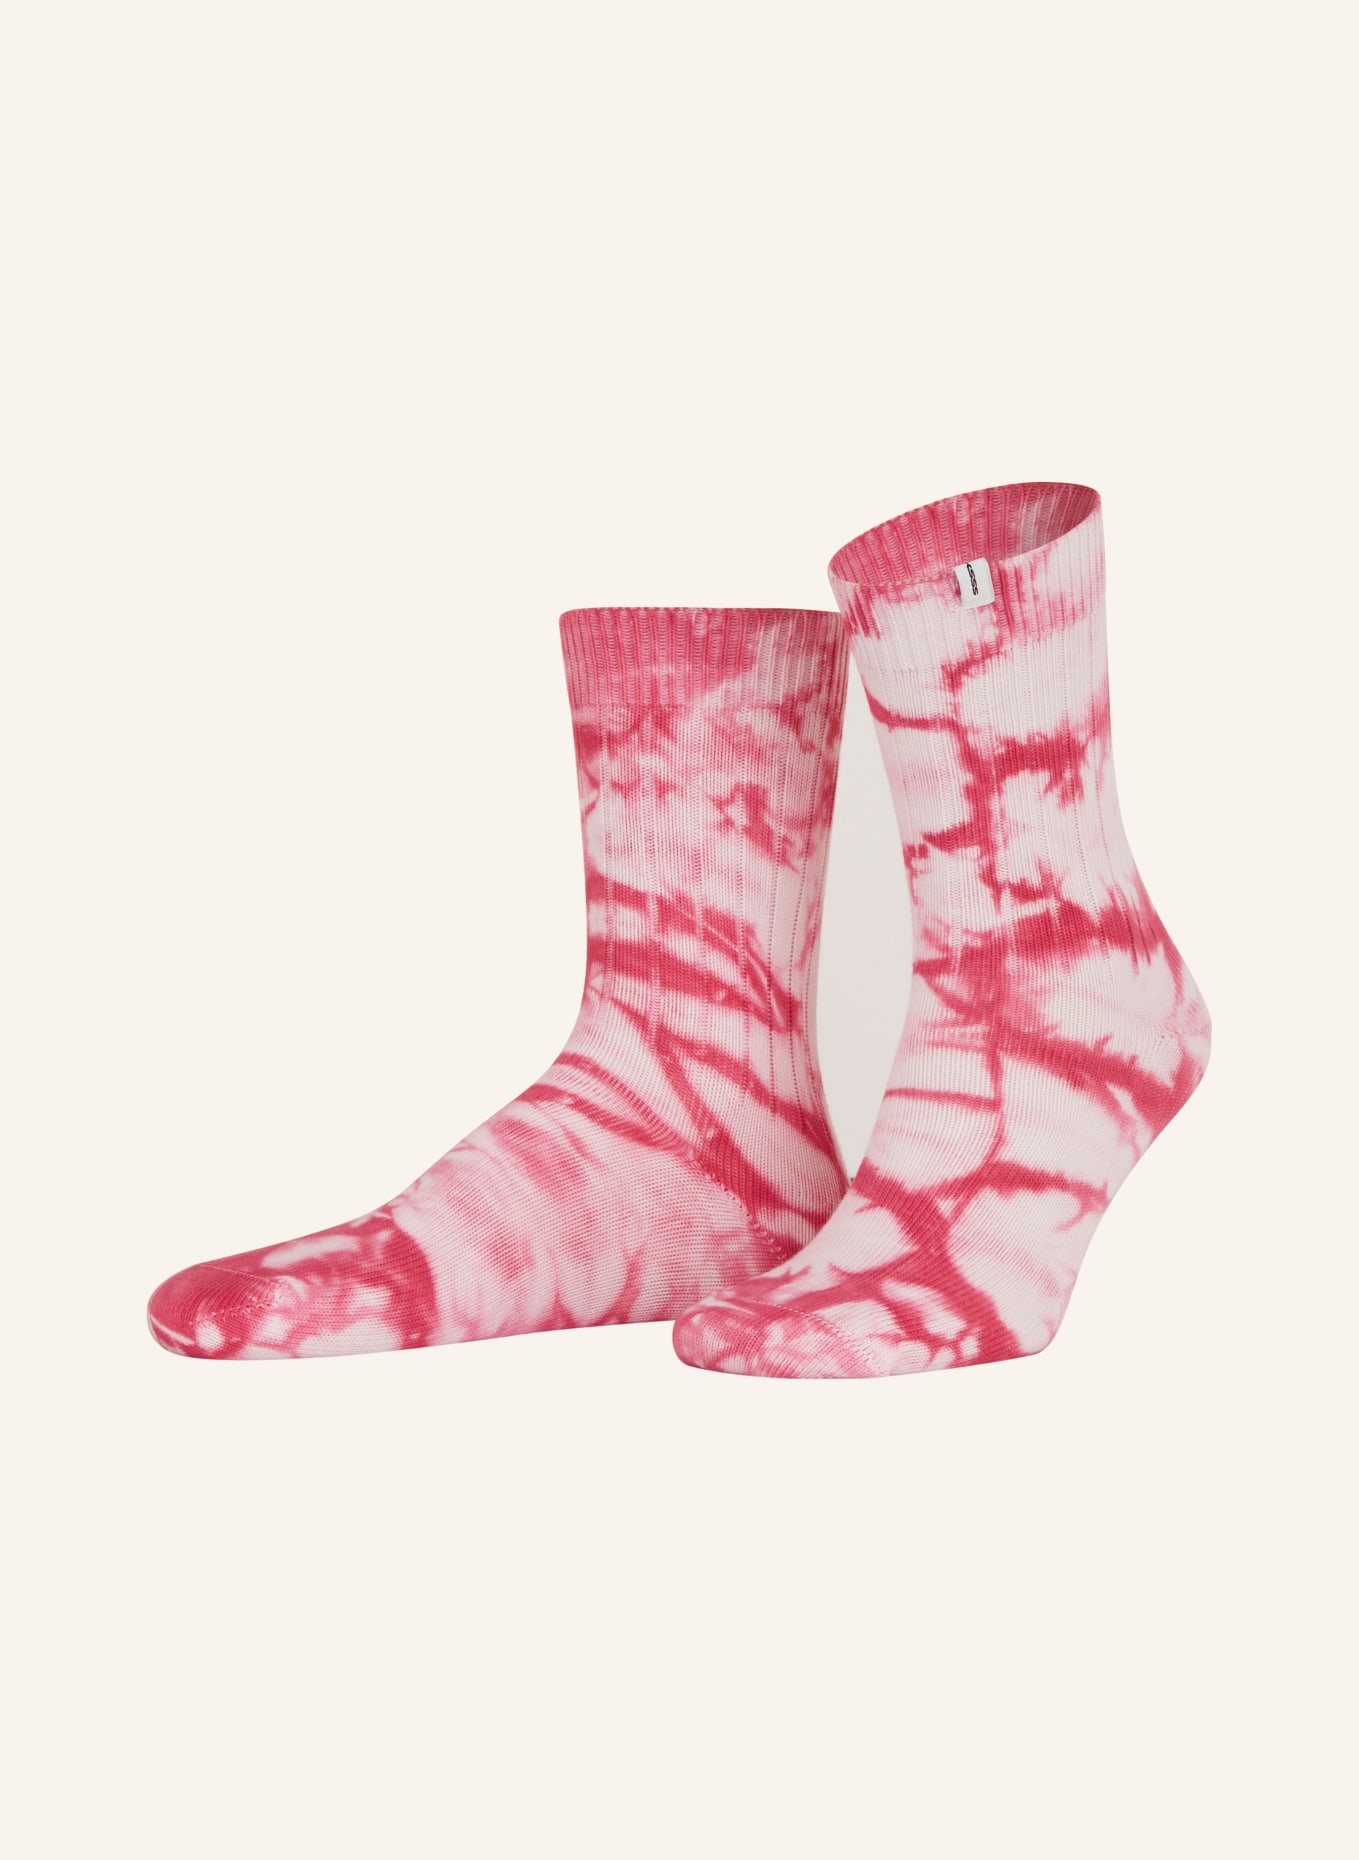 SOCKSSS Socks MELTED SUNDAY, Color: MELTED SUNDAY (Image 1)